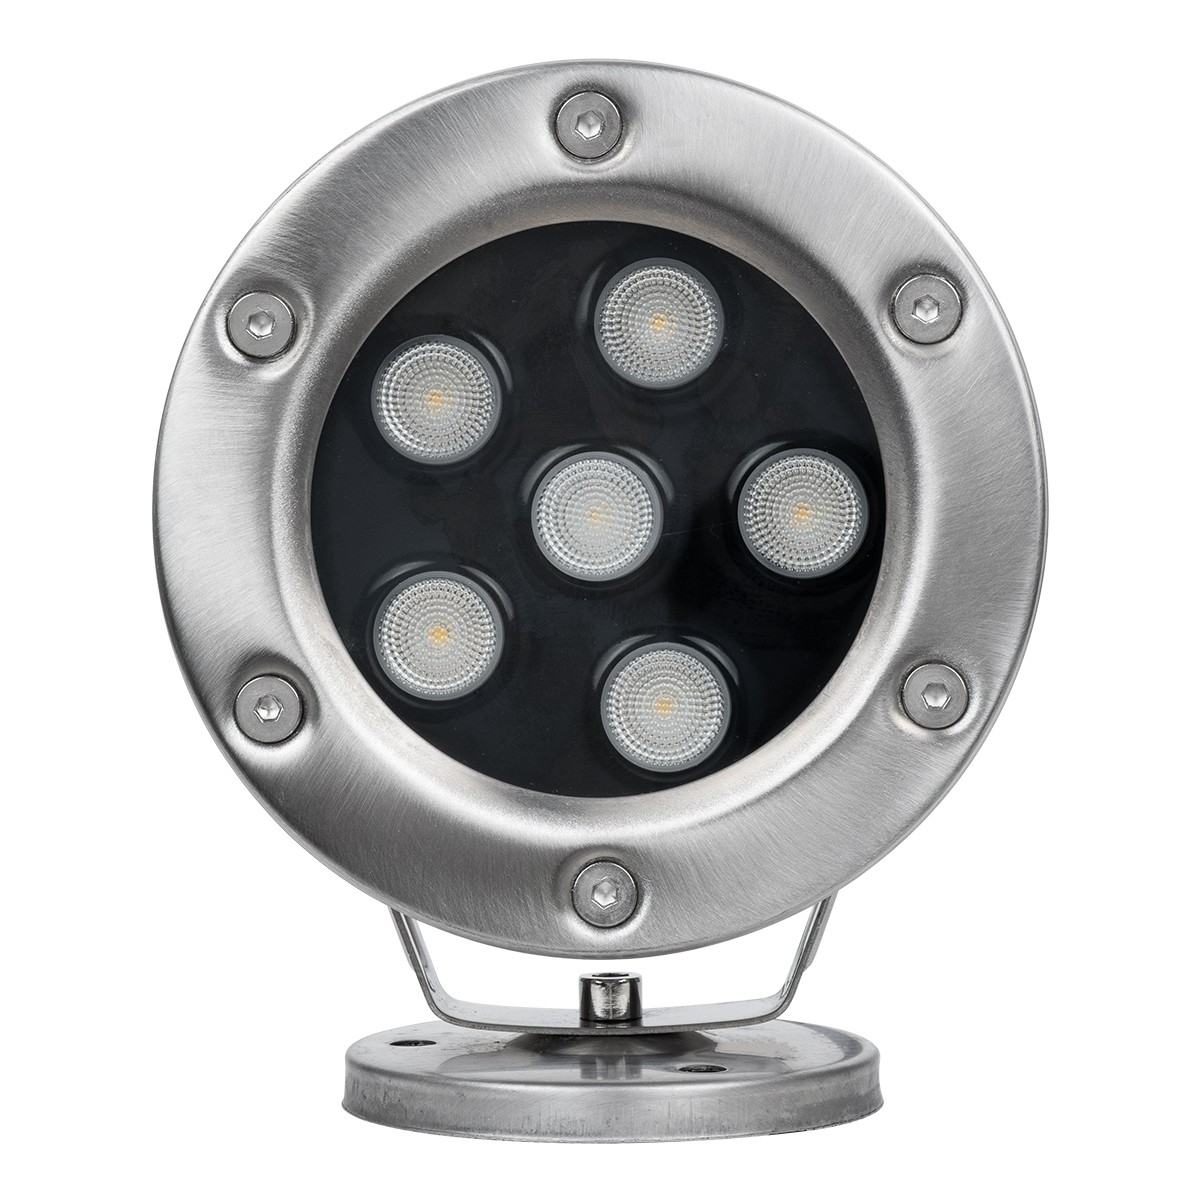 LED Φωτιστικό Υποβρύχιο Σποτ Ειδικό για Σιντριβάνια FINA 9W IP68 Φ12 x Υ14cm Ανοξείδωτο Ατσάλι